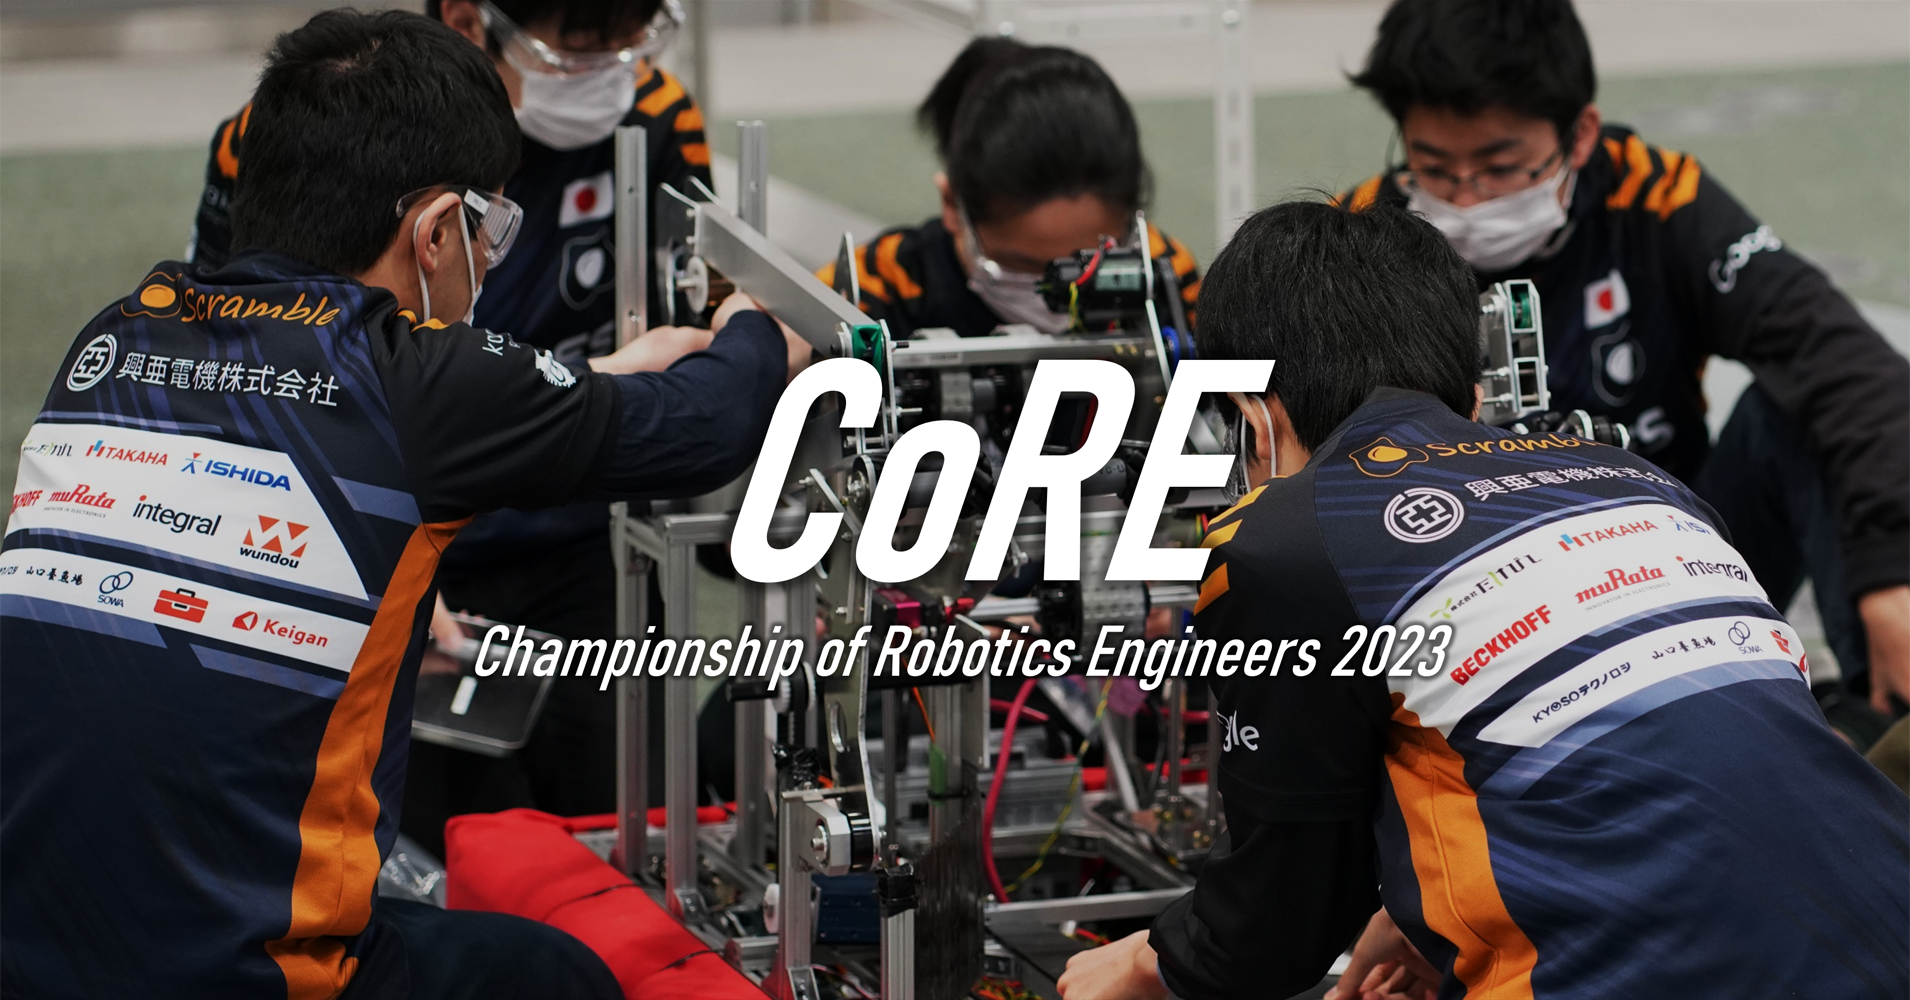 ロボットエンジニア選手権 CoRE2023 初開催のお知らせ